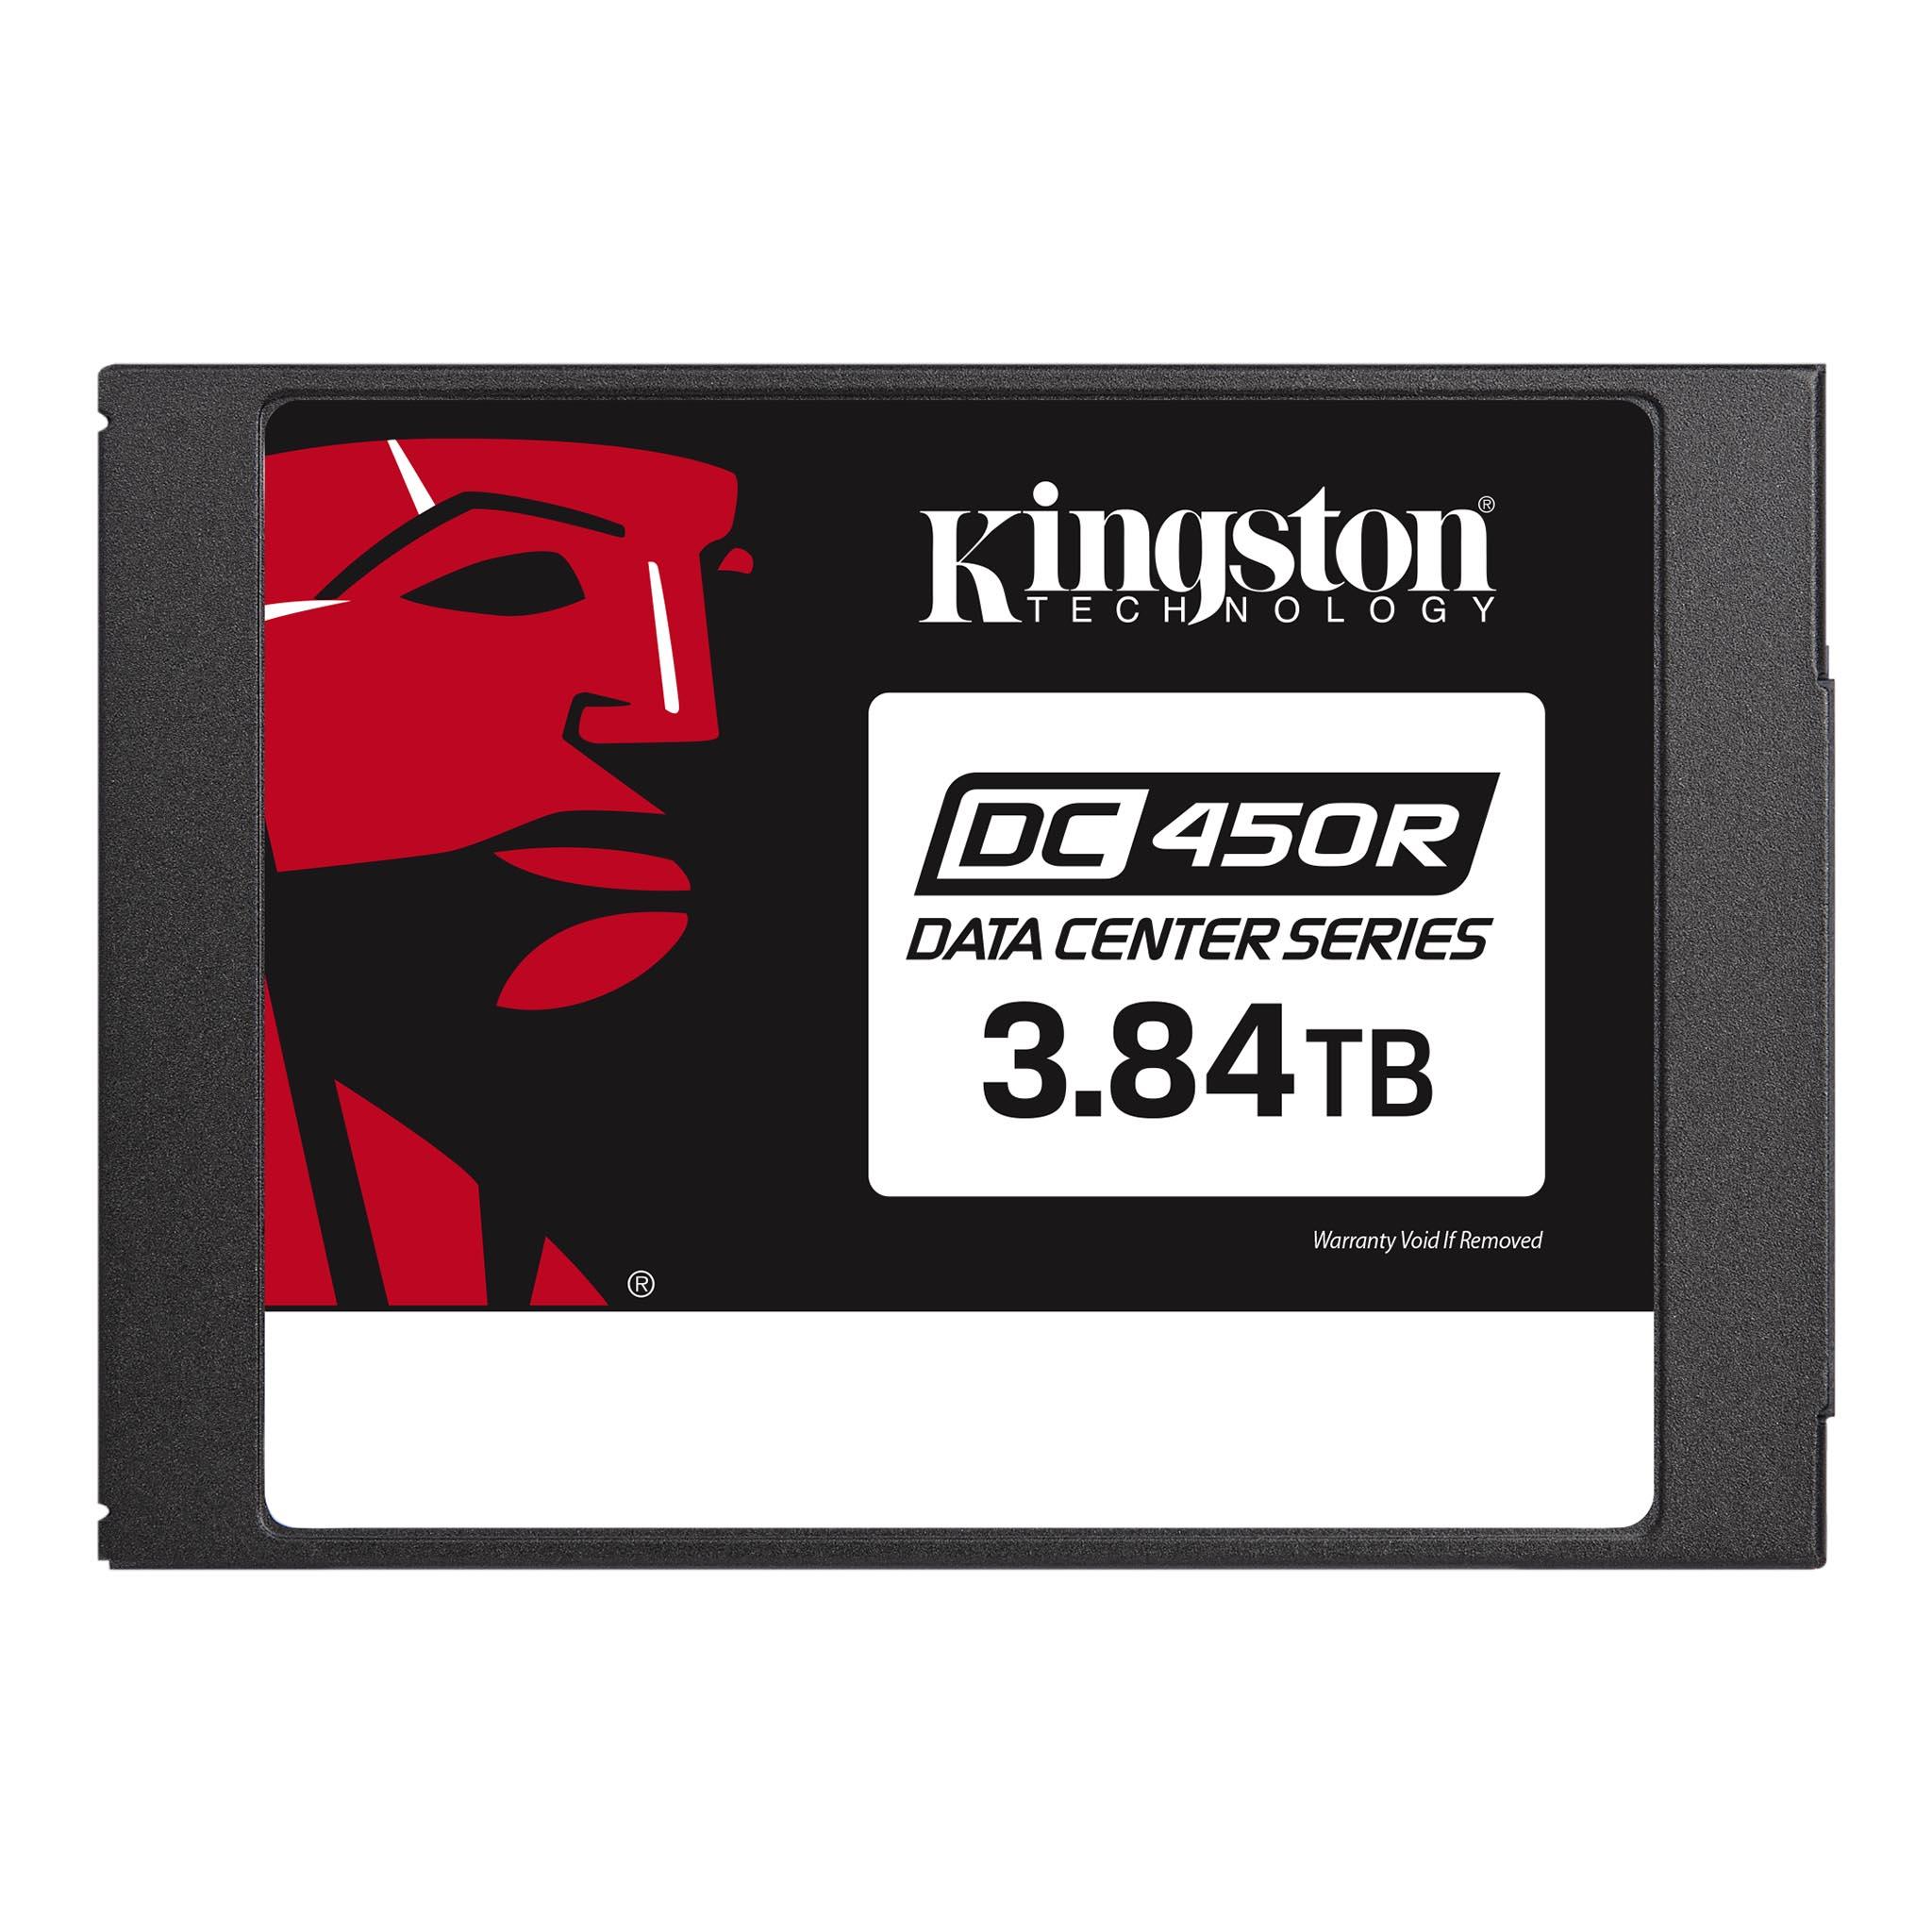 Kingston - SEDC450R-3840G -   